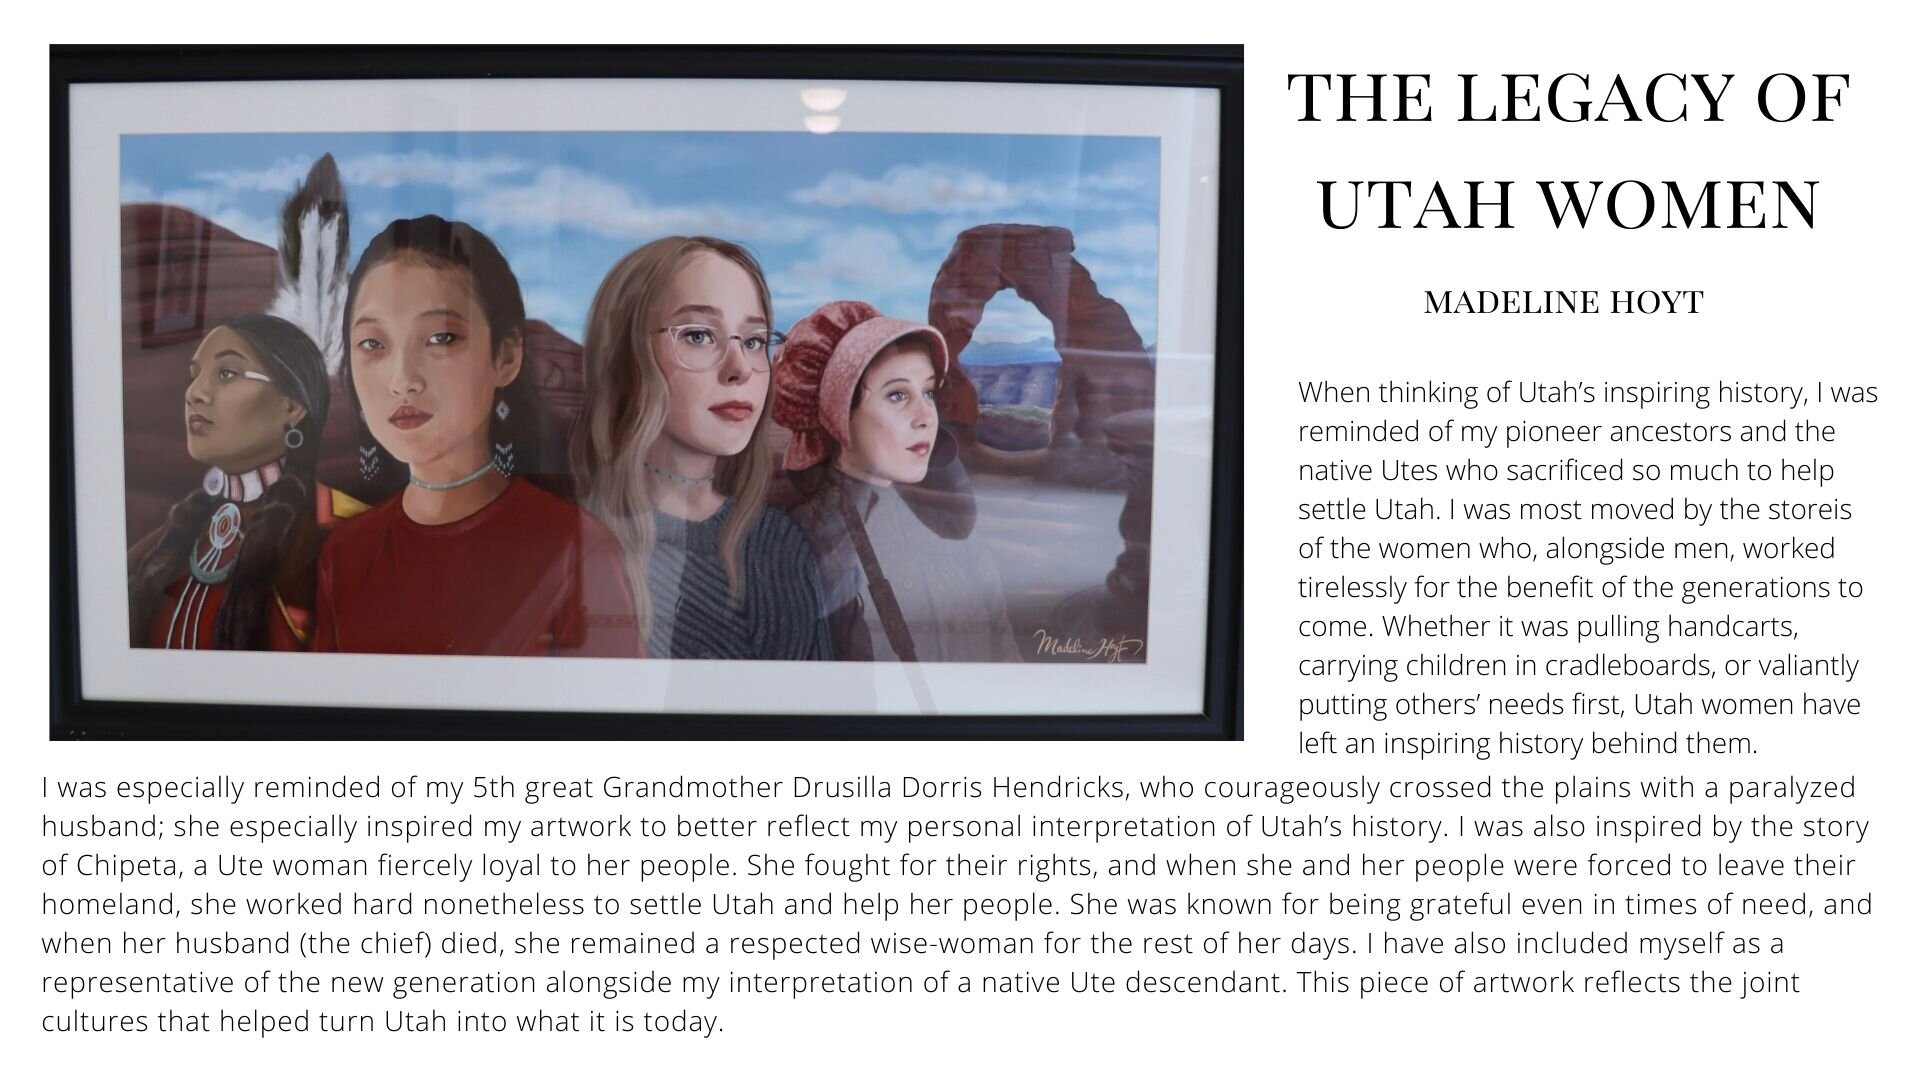 The Legacy of Utah Women